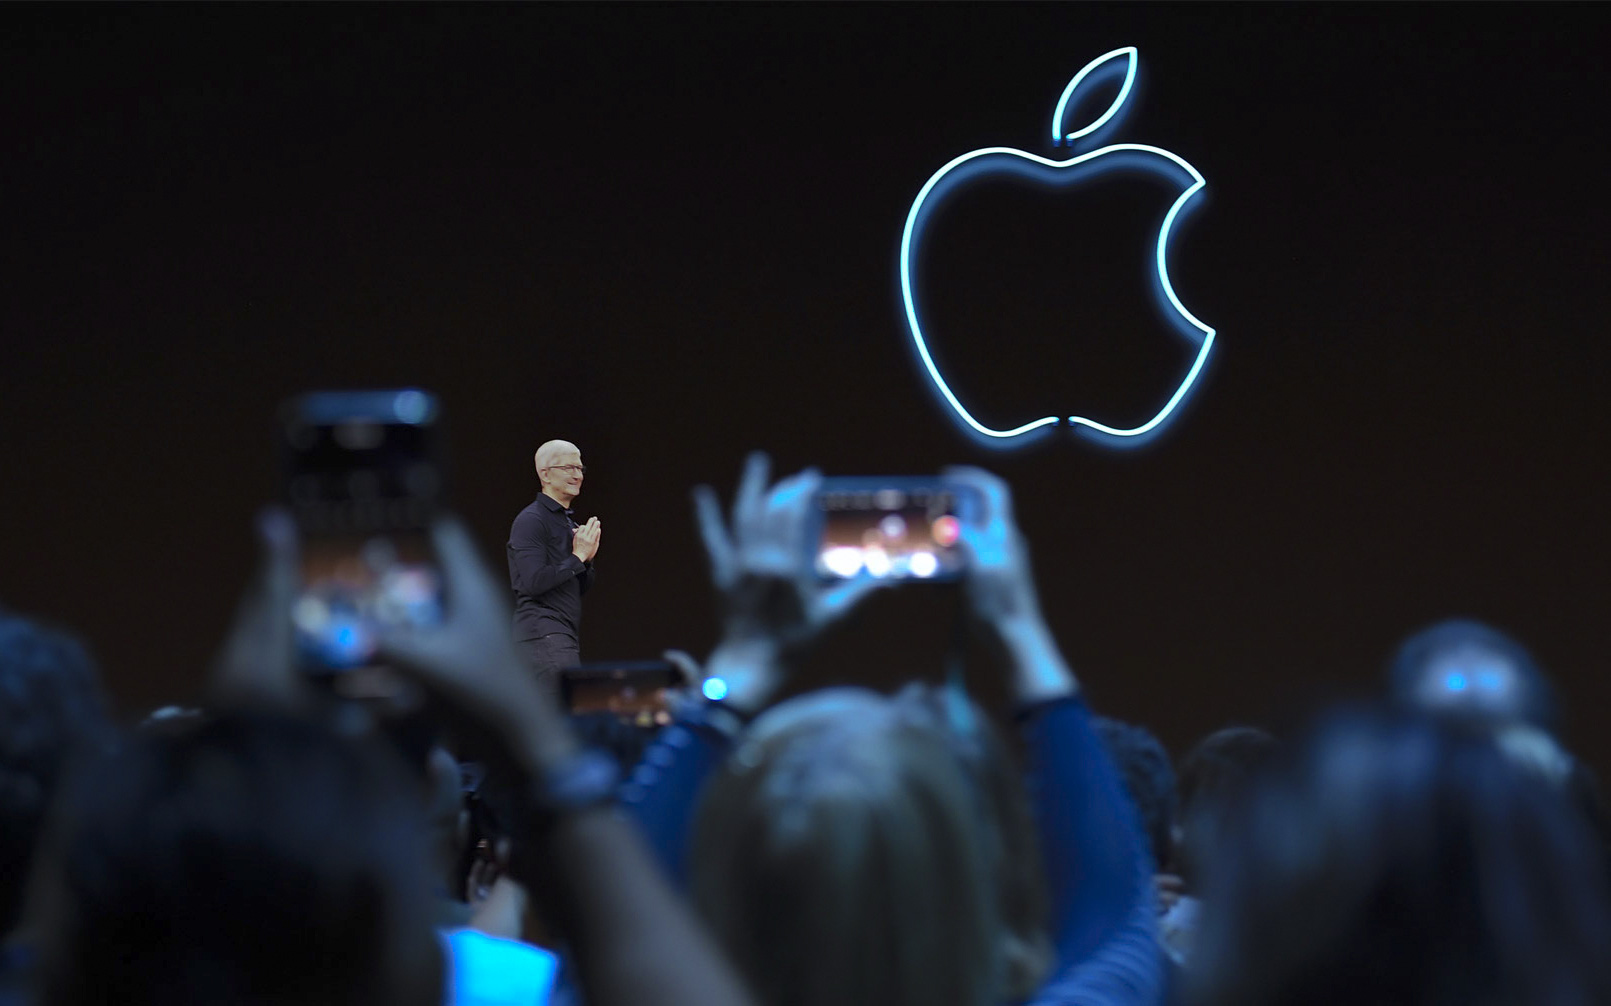 Án phạt 250 tỷ hé lộ mặt trái sẽ khiến người dùng lo ngại về Apple?